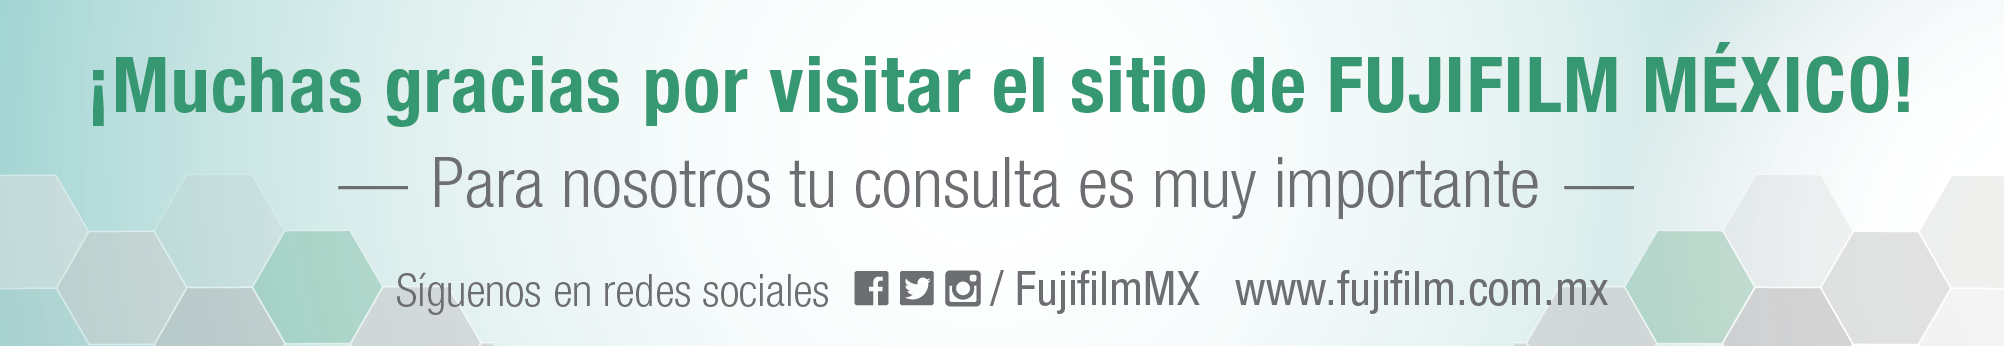 Muchas gracias por visitar el sitio de Fujifilm México. Para nosotros tu consulta es muy importante.